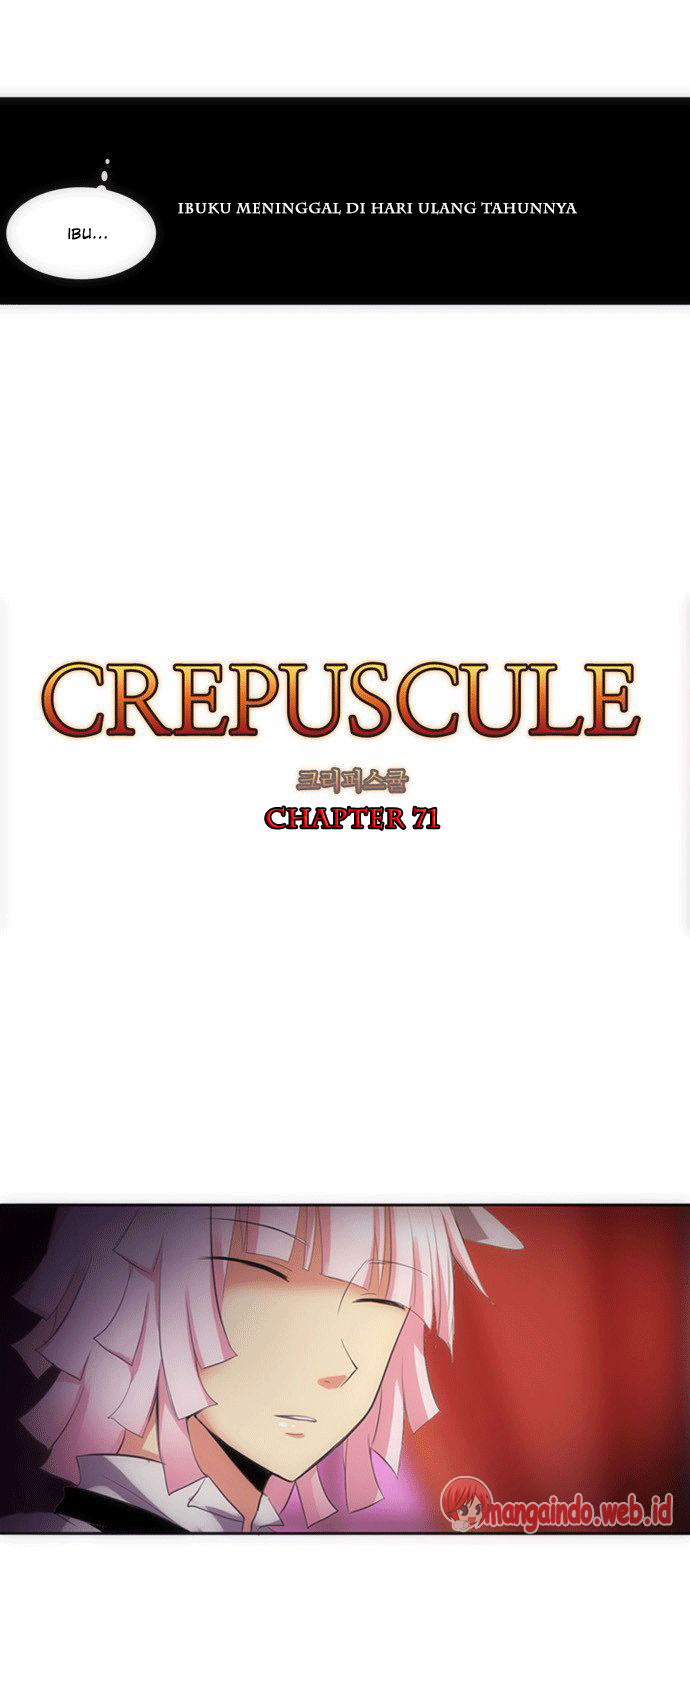 Crepuscule Chapter 71